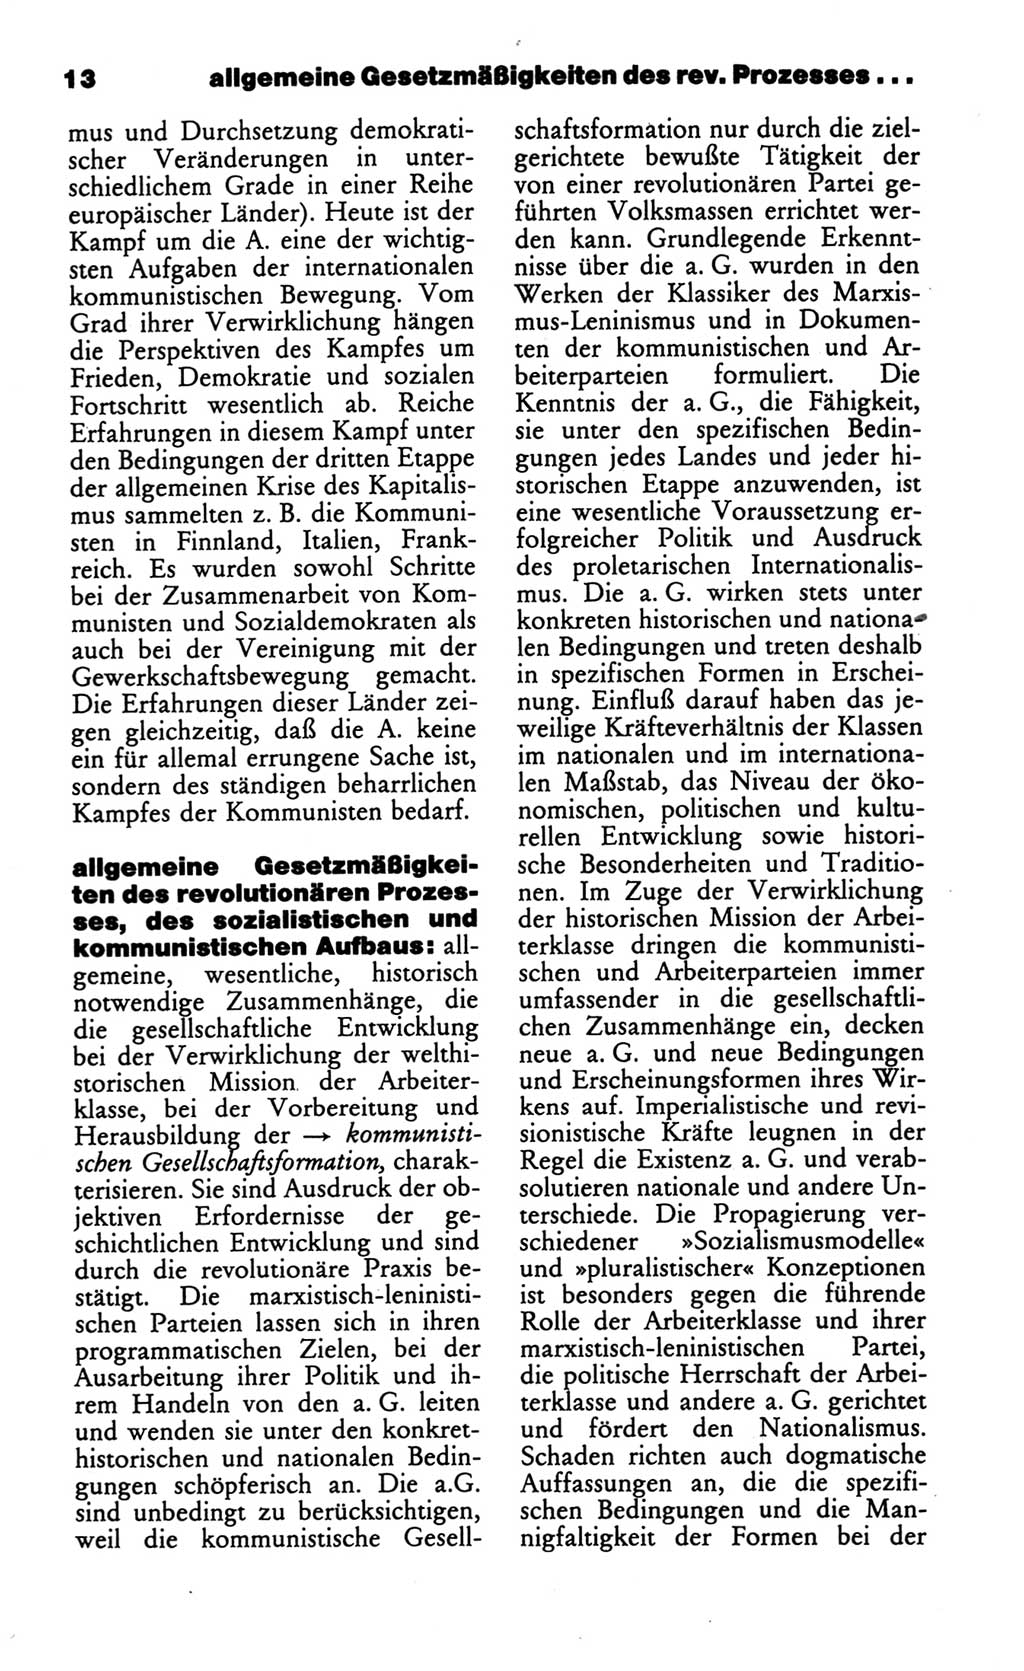 Wörterbuch des wissenschaftlichen Kommunismus [Deutsche Demokratische Republik (DDR)] 1986, Seite 13 (Wb. wiss. Komm. DDR 1986, S. 13)